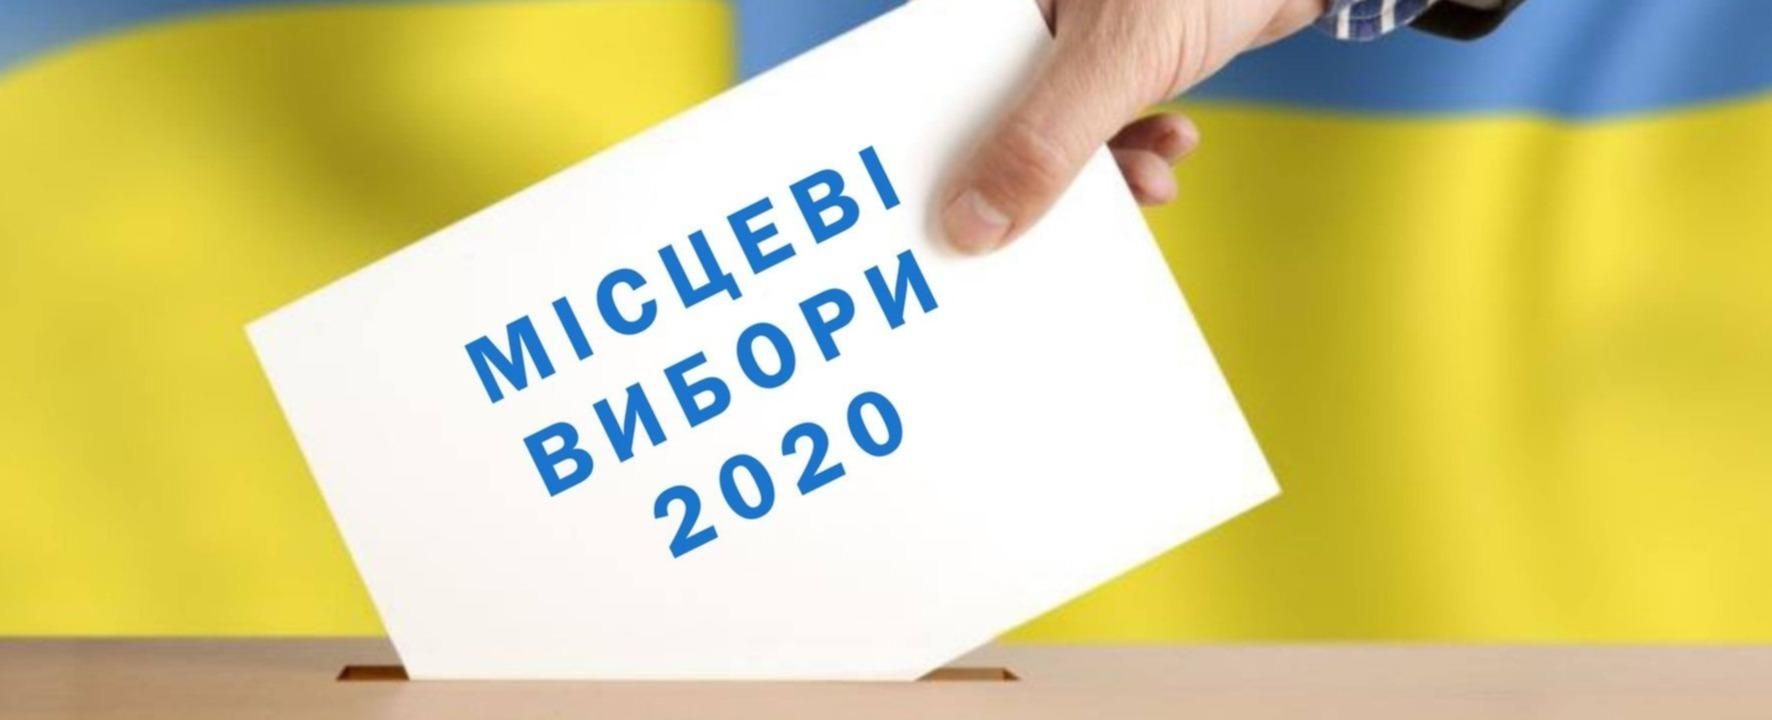 Місцеві вибори 2020: активісти оприлюднили кандидатів і партії, що агітують у соціальних мережах в день голосування